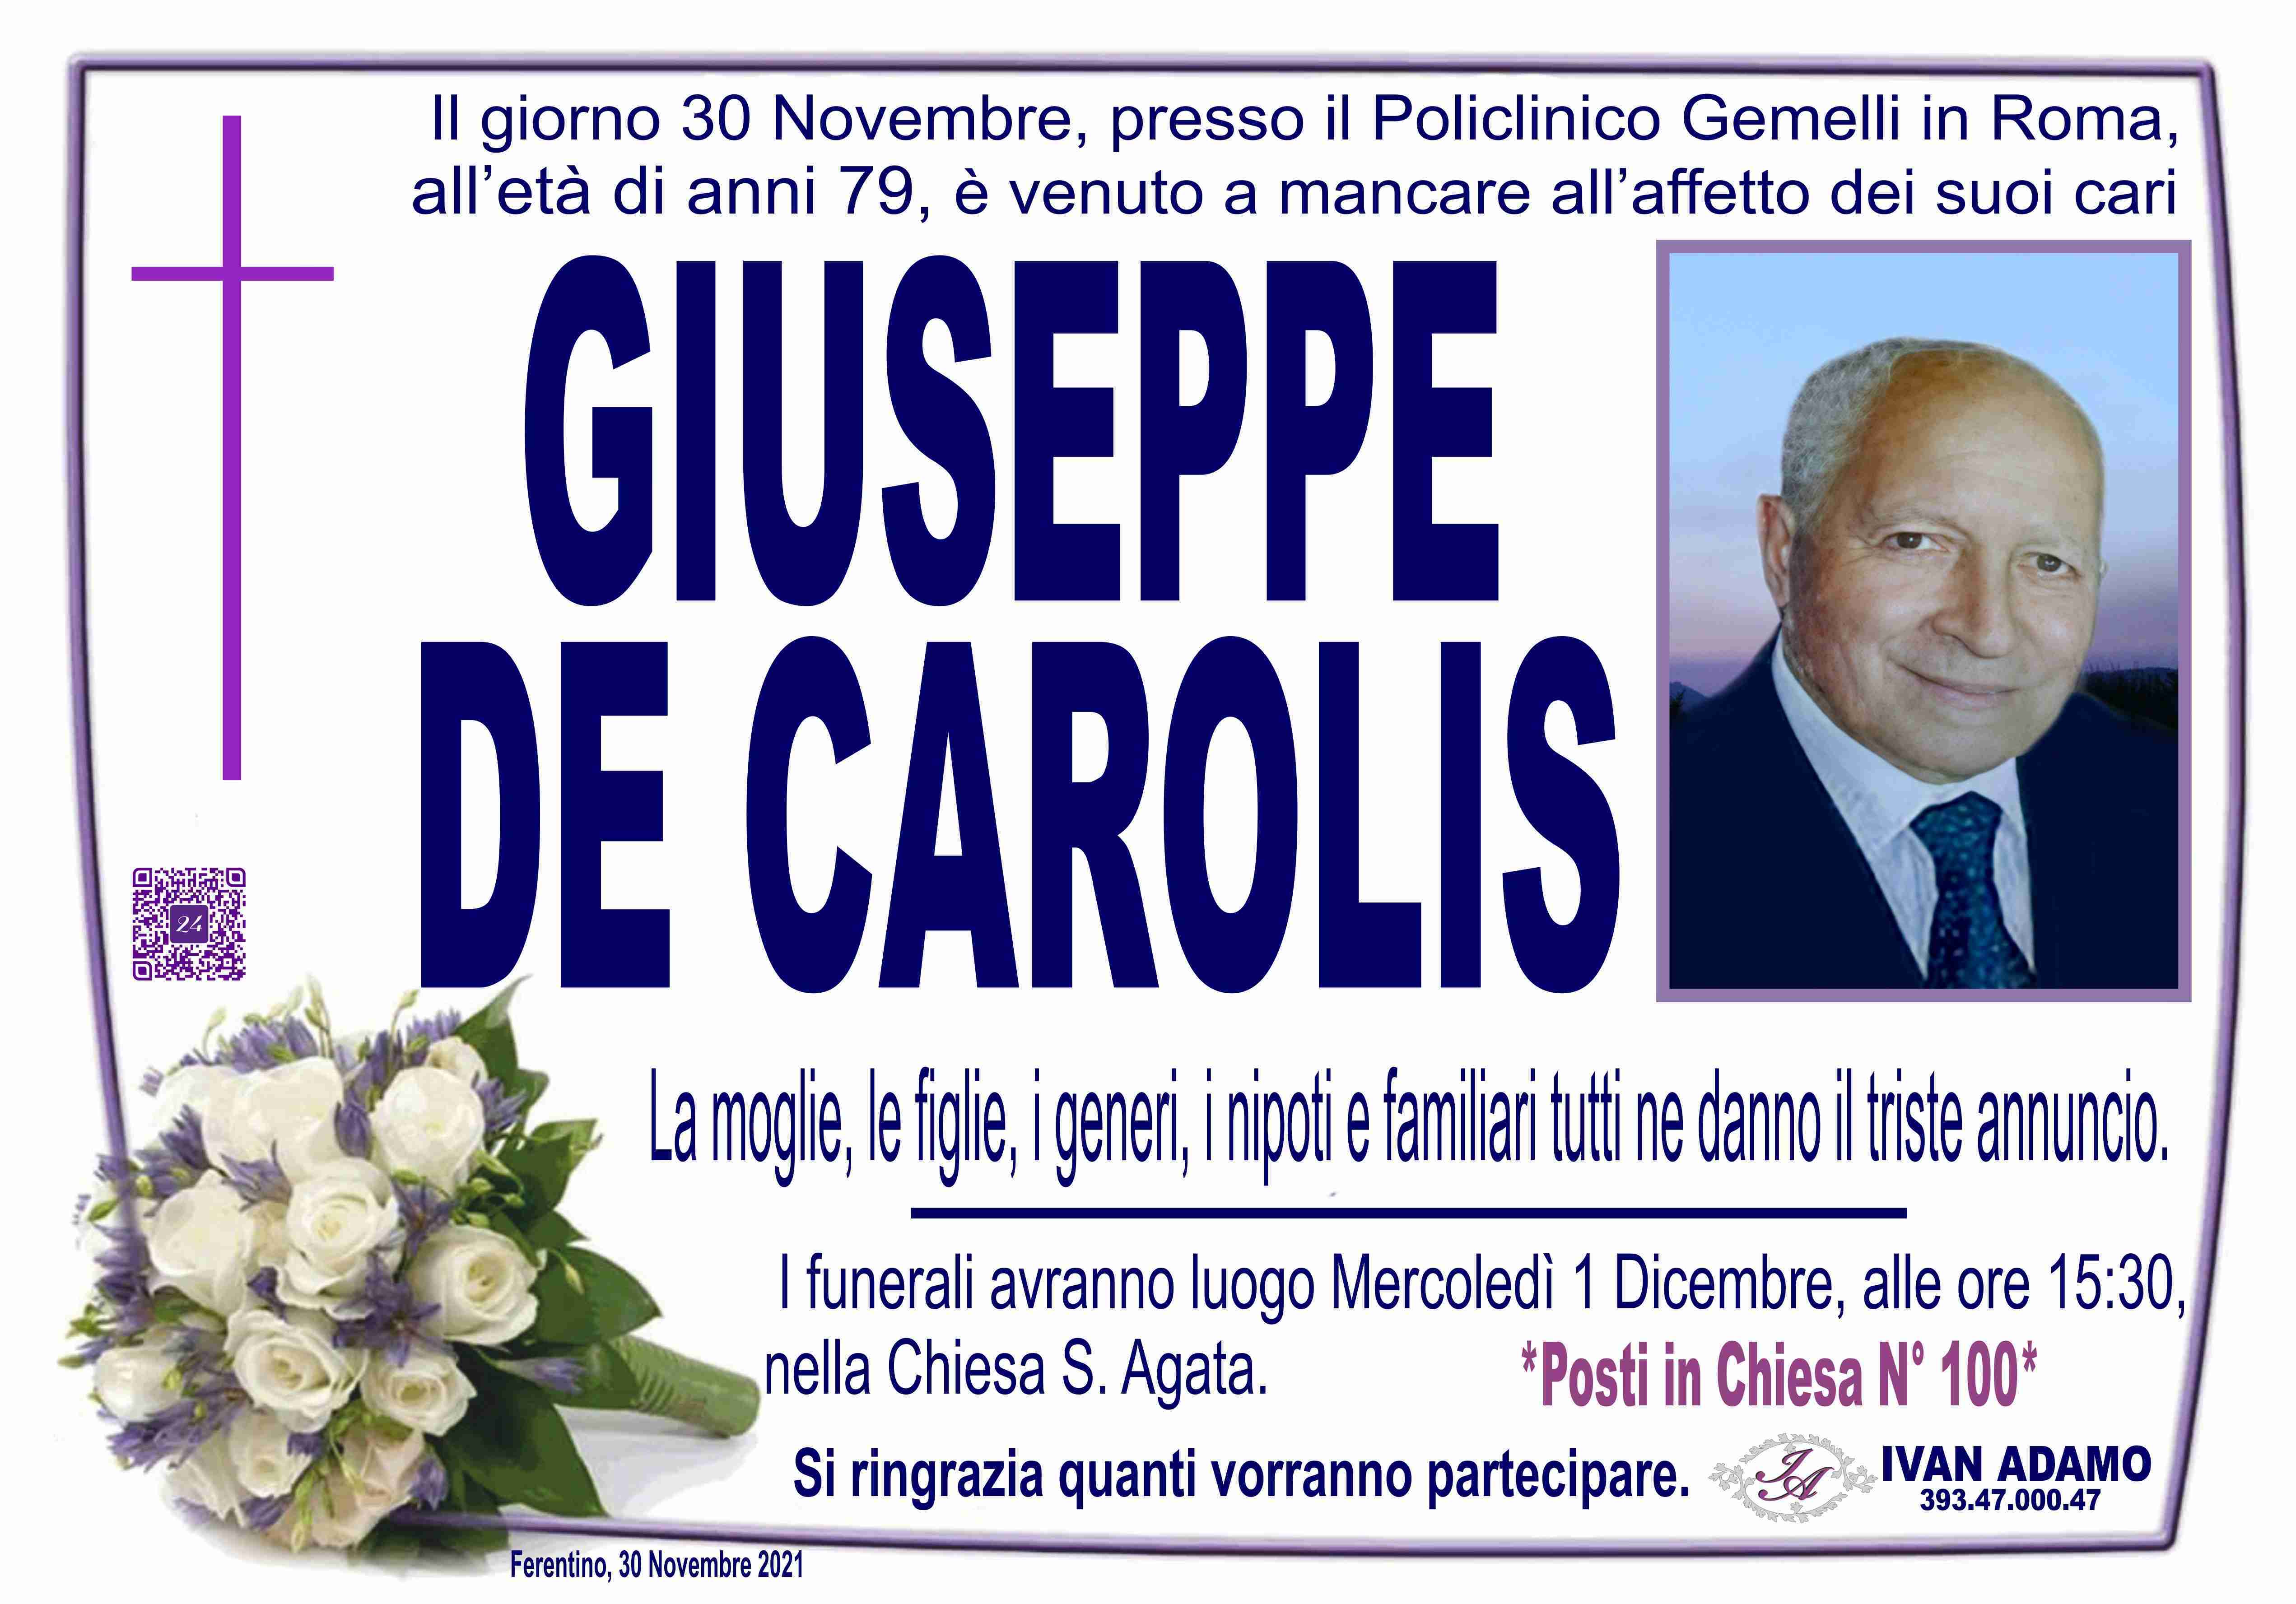 Giuseppe De Carolis